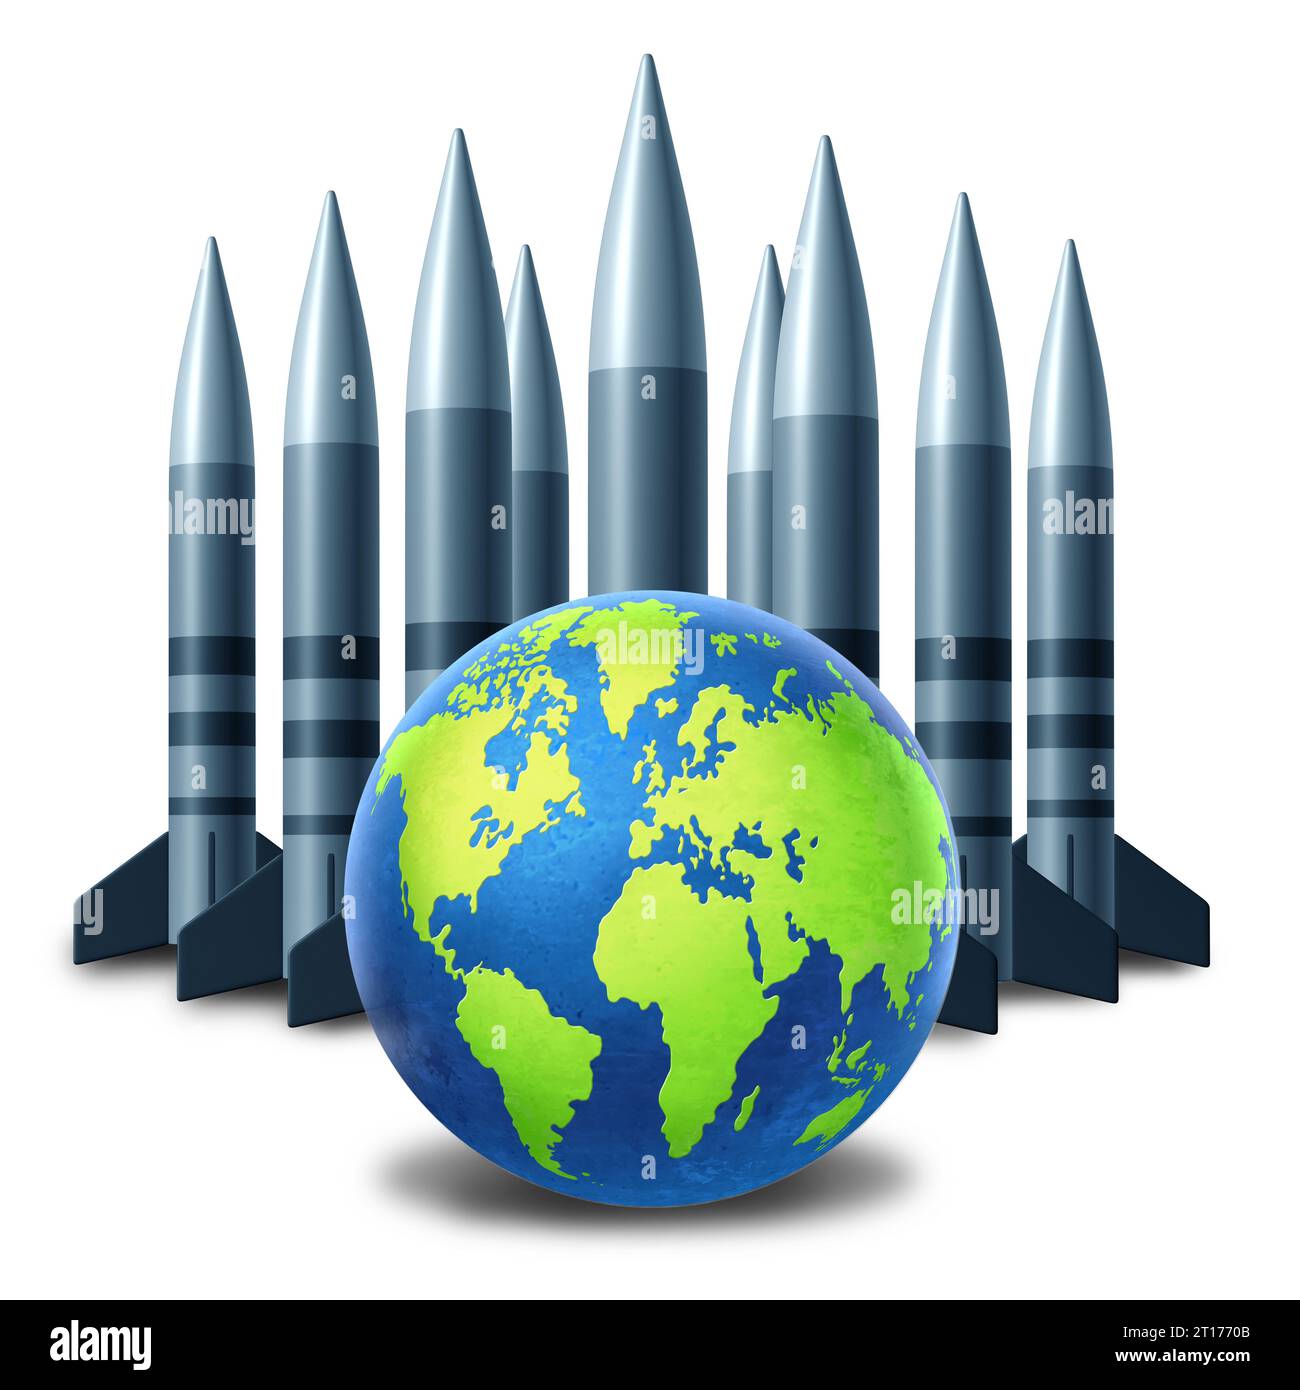 Globaler nuklearer Weltkrieg Risiko als Planet, der von einer Bombenkatastrophe oder einem abrüstungsabkommen mit ballistischen Raketen bedroht ist. Stockfoto